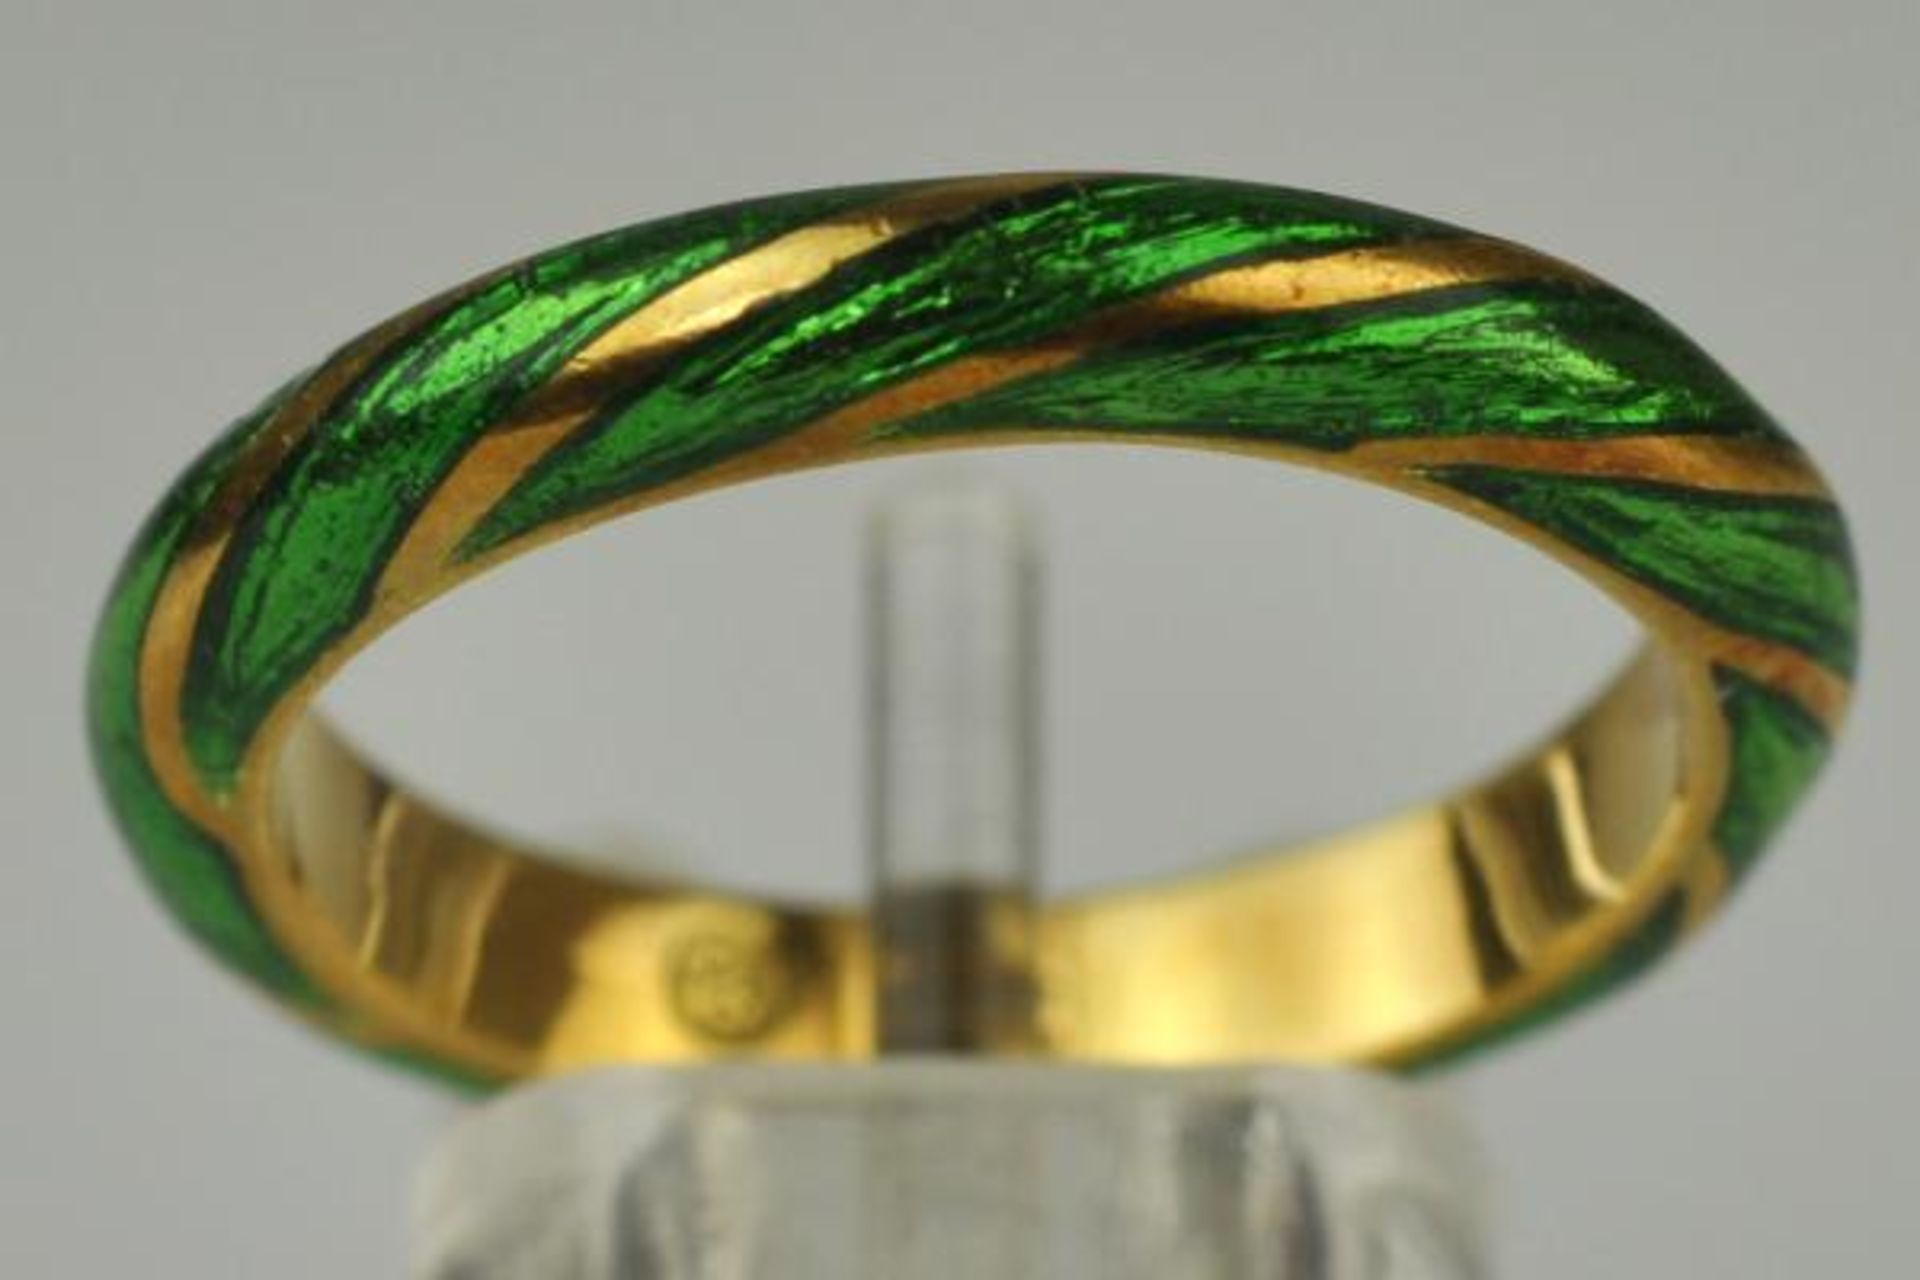 2 RINGE verschieden, Ring teilemailliert als Band, Gelbgold 18ct 3,3g und gerippter Ring grün